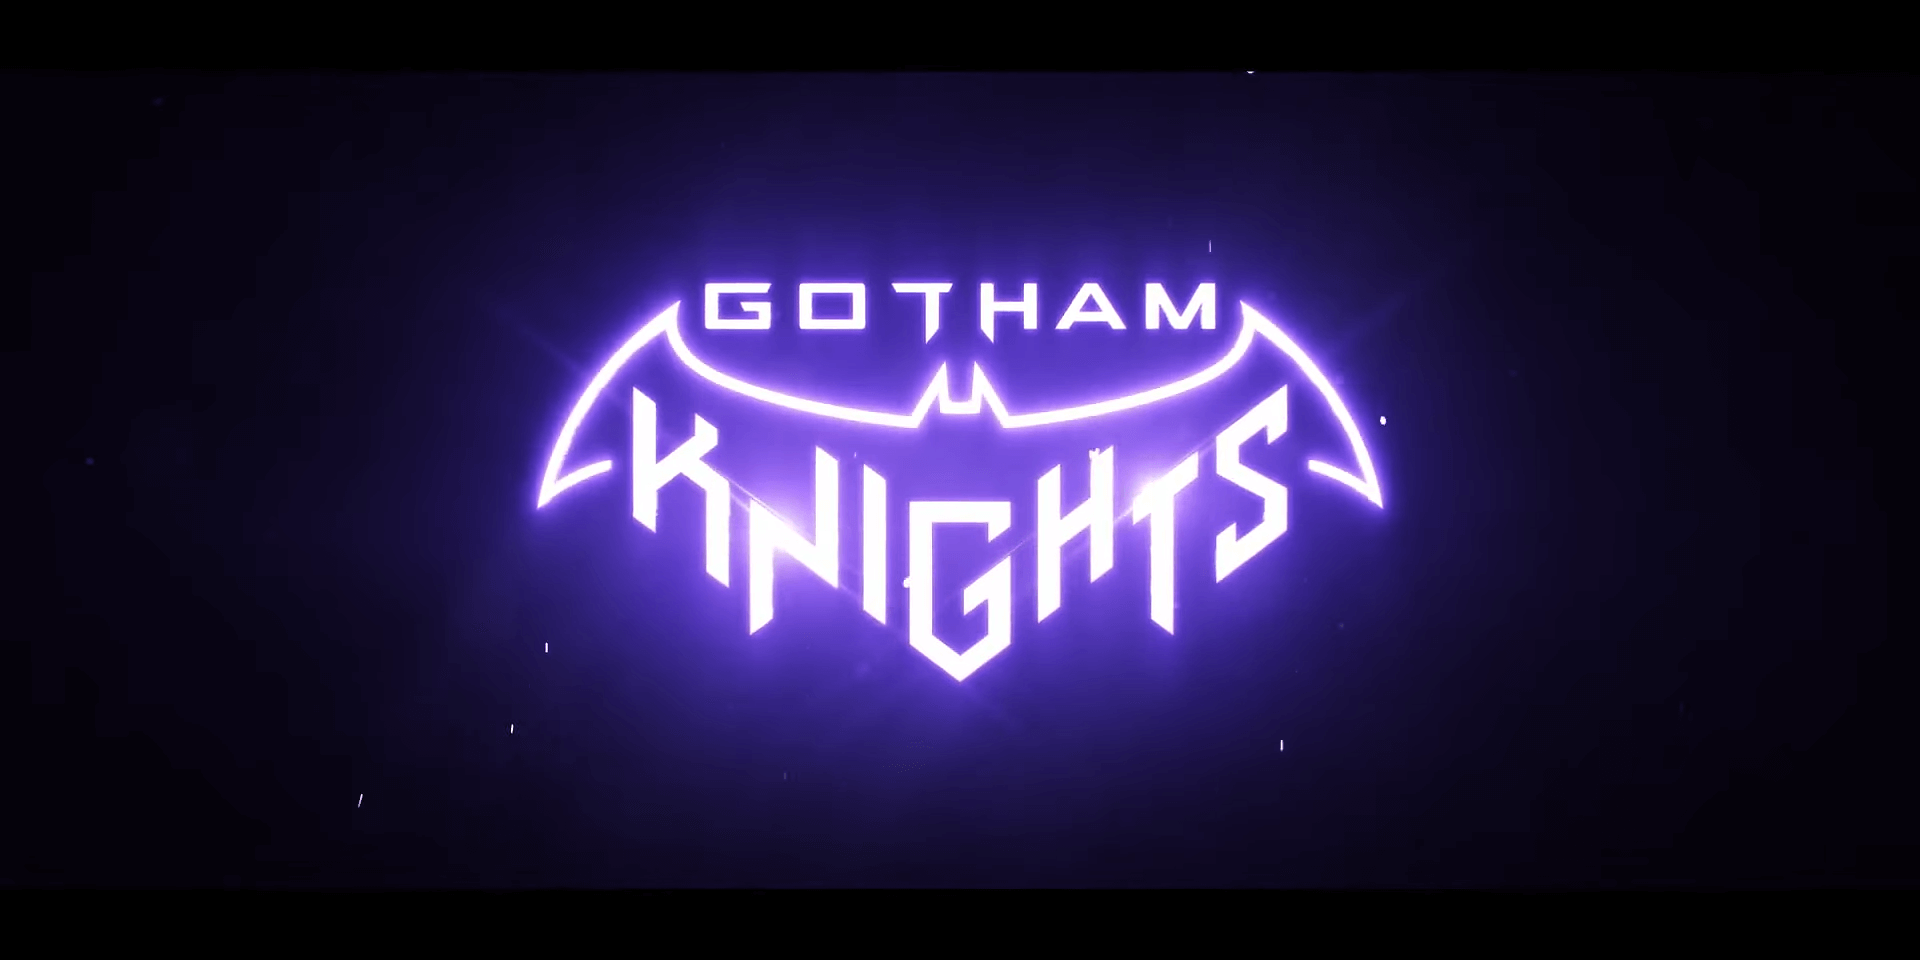 Gotham Knights hat einen Release Titel